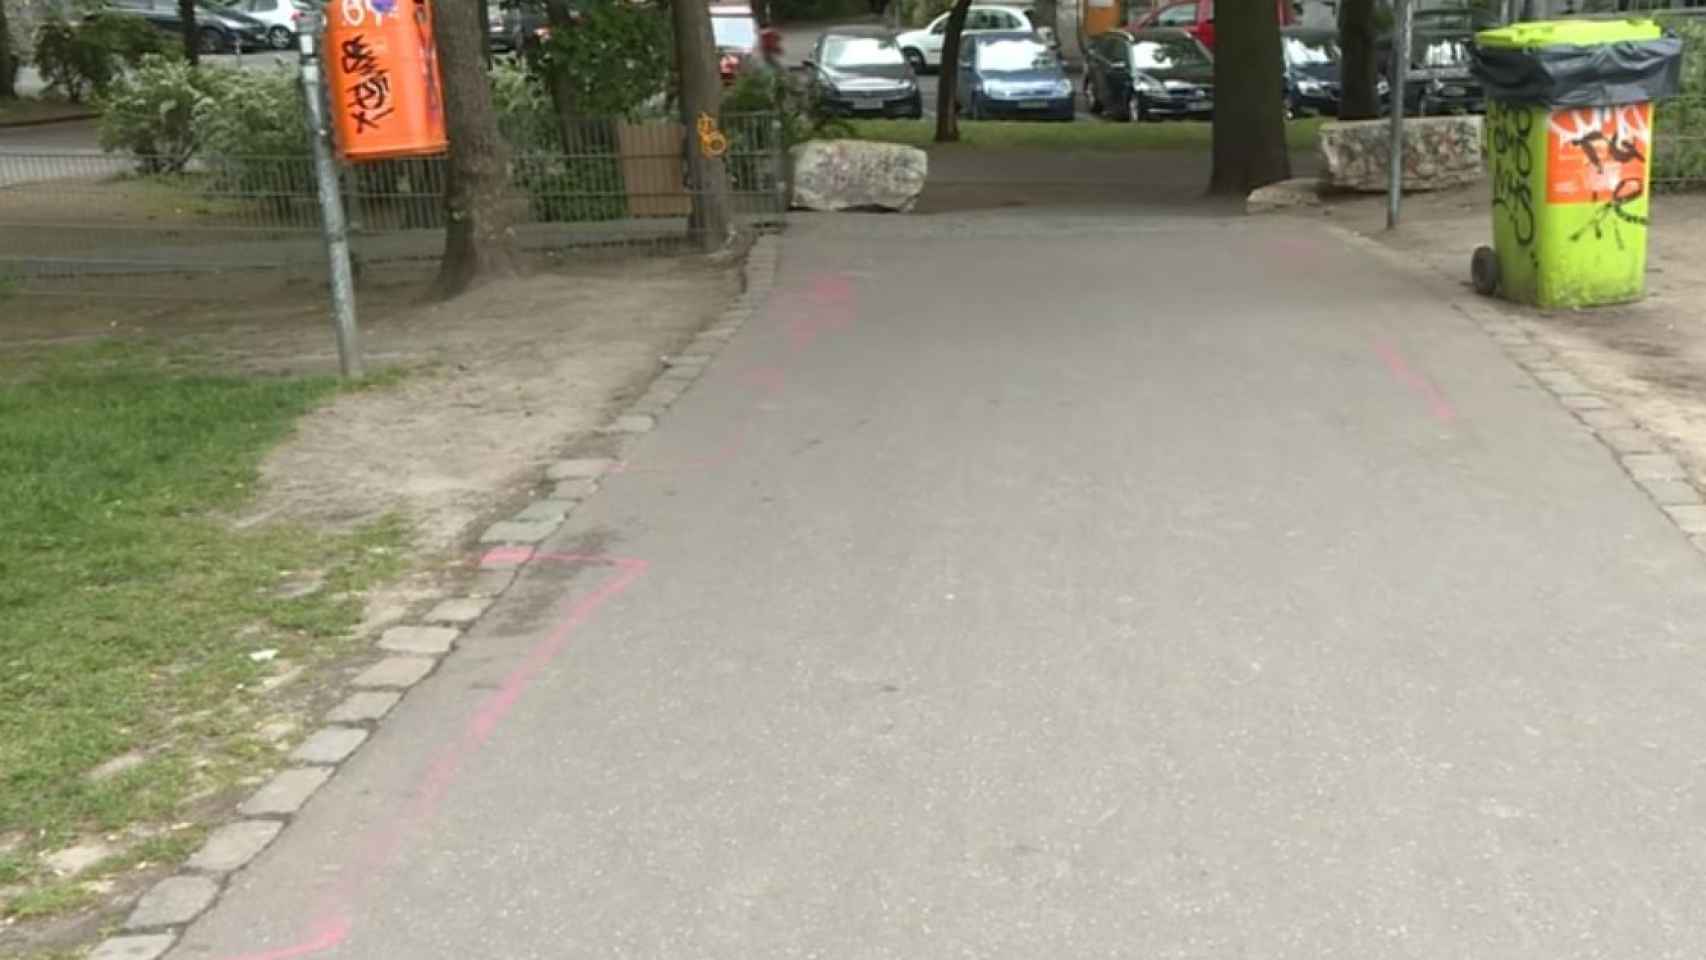 Líneas rosas pintadas por Cengiz Demirci, responsable del parque, para dividir las zonas de venta de droga.